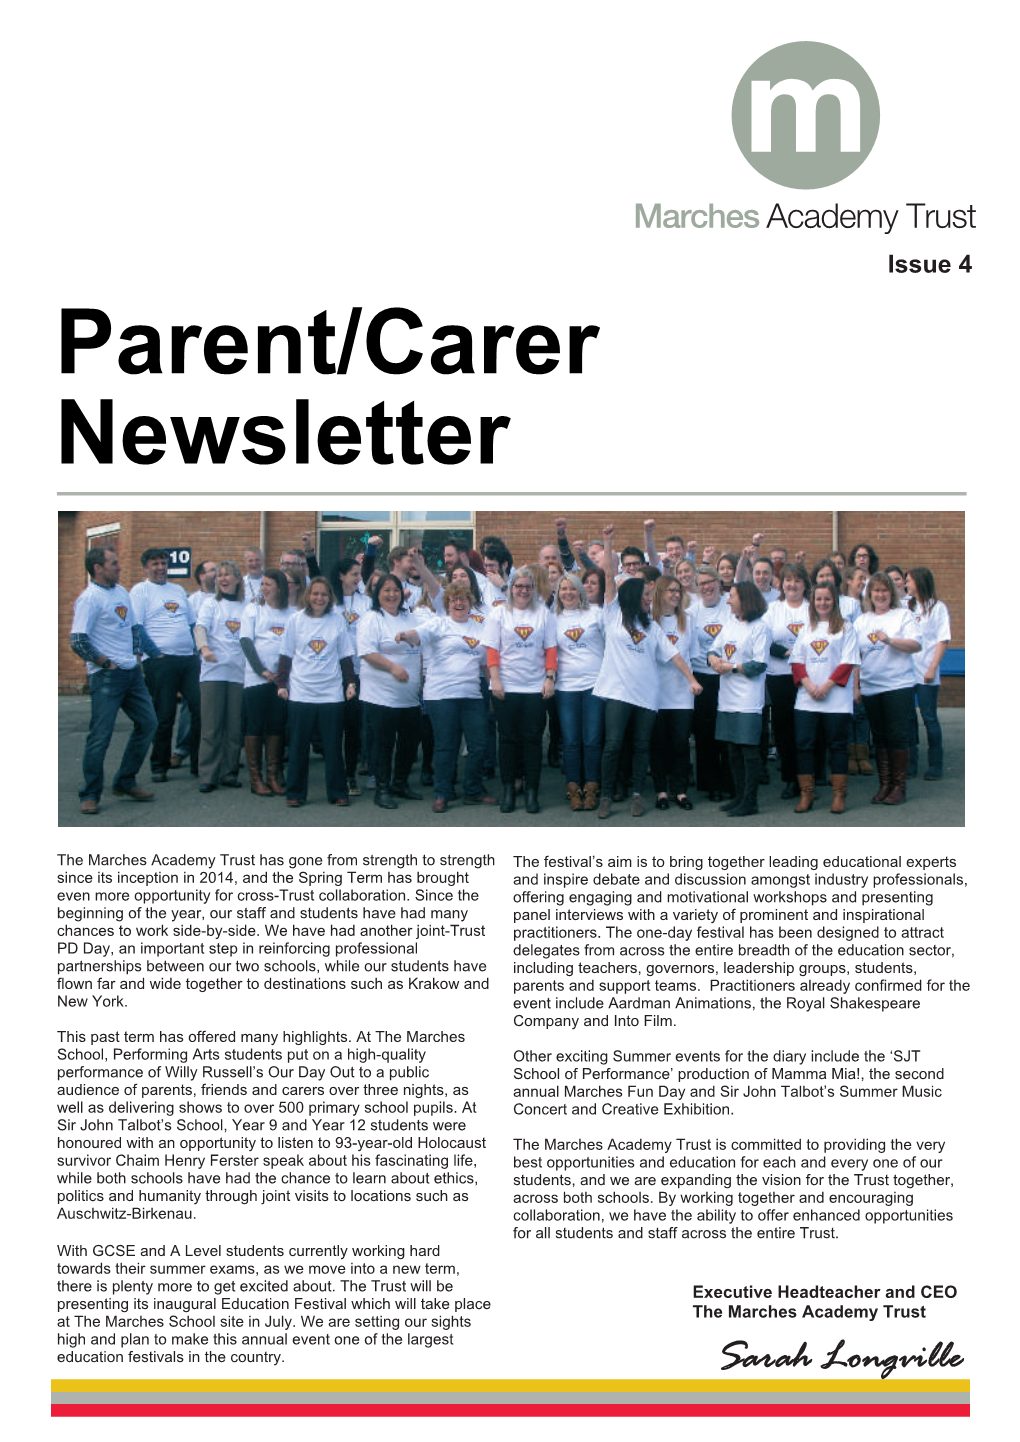 Parent/Carer Newsletter